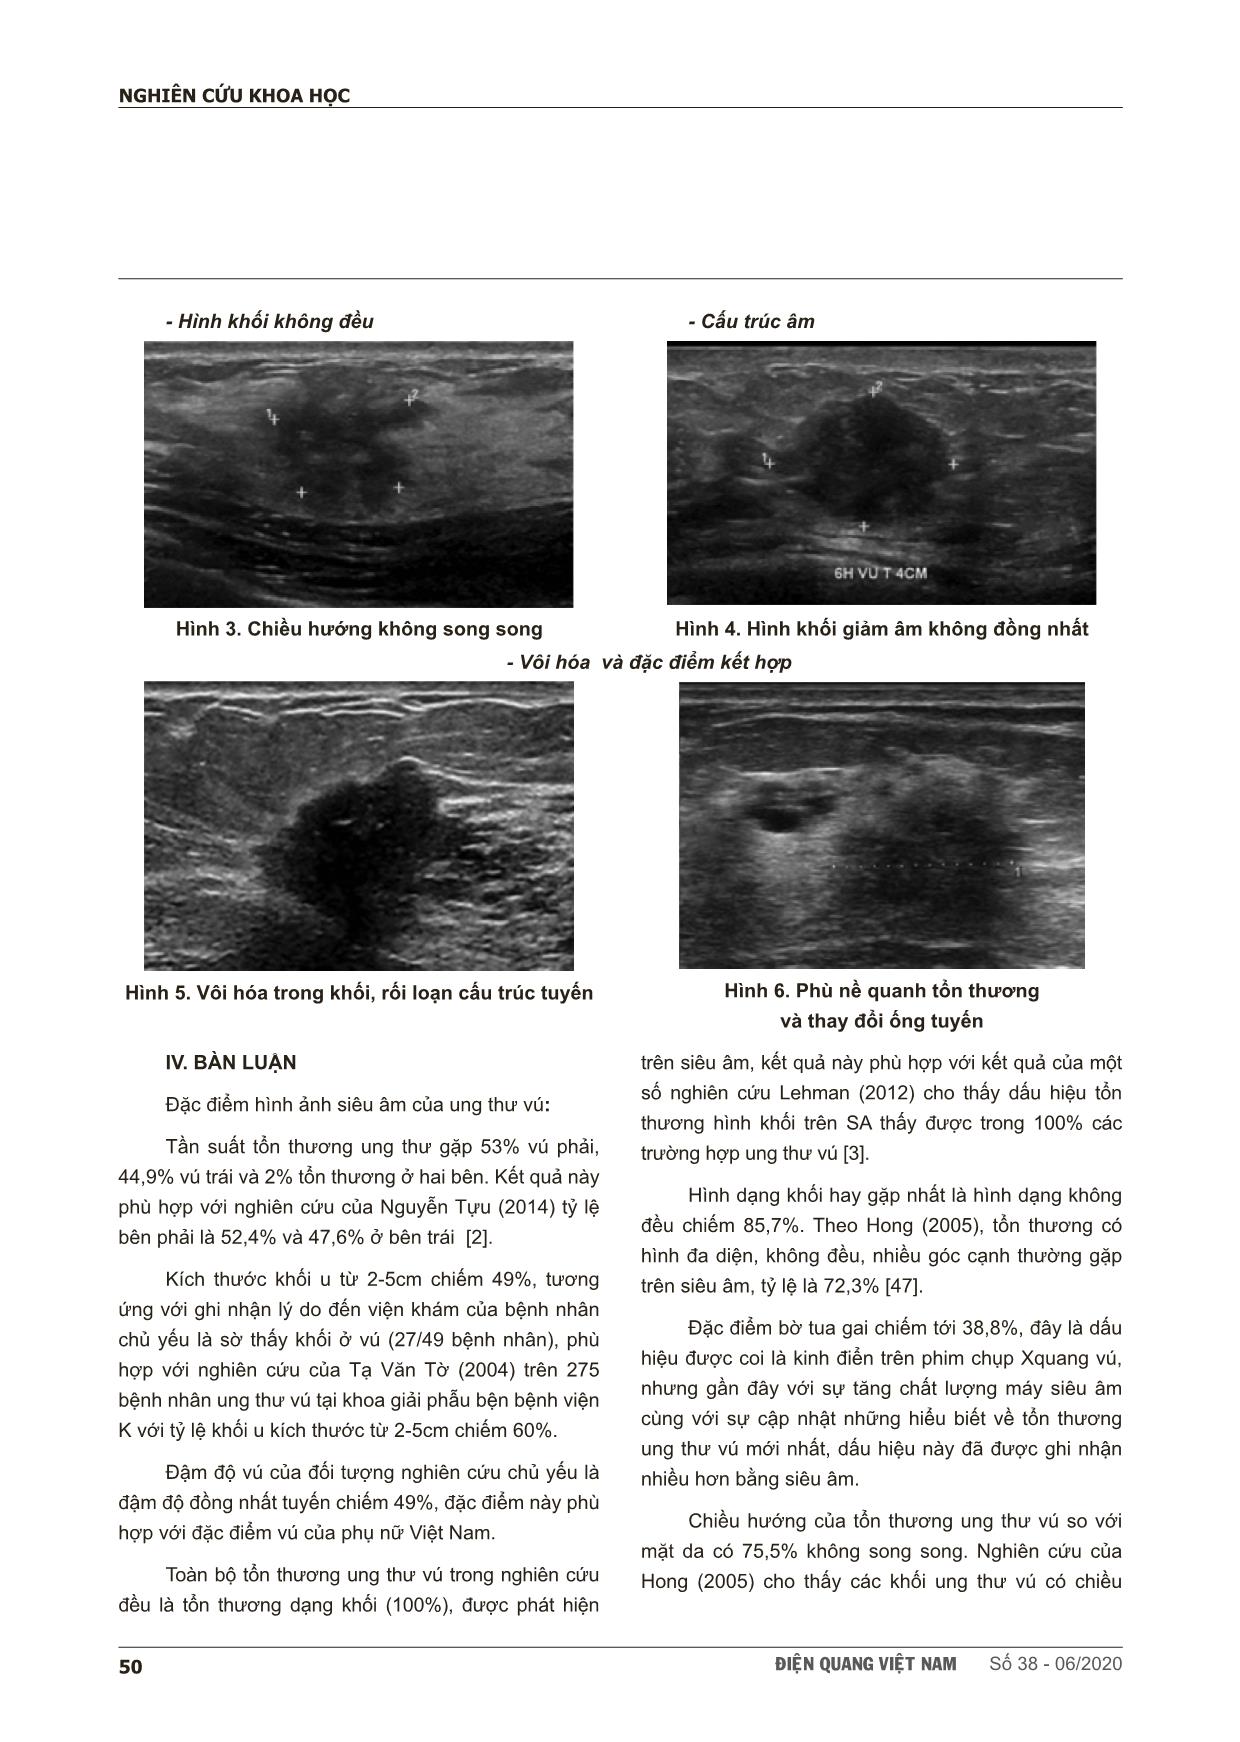 Đặc điểm hình ảnh siêu âm của ung thư tuyến vú tại bệnh viện Bạch Mai trang 4